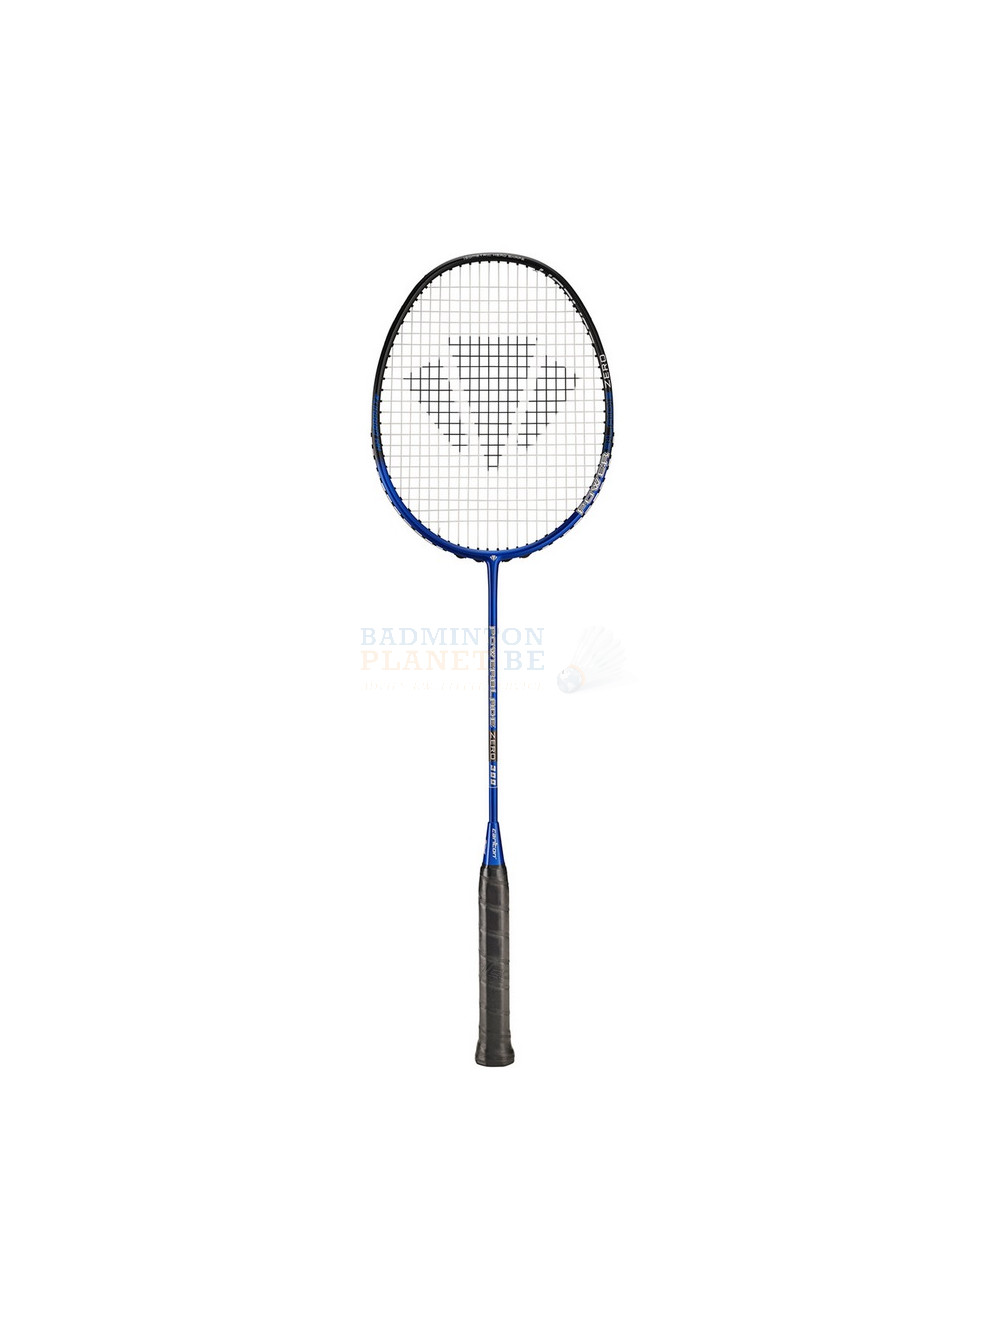 deed het Nationale volkstelling Meisje Carlton Powerblade Zero 300 badmintonracket kopen? - Badmintonplanet.be